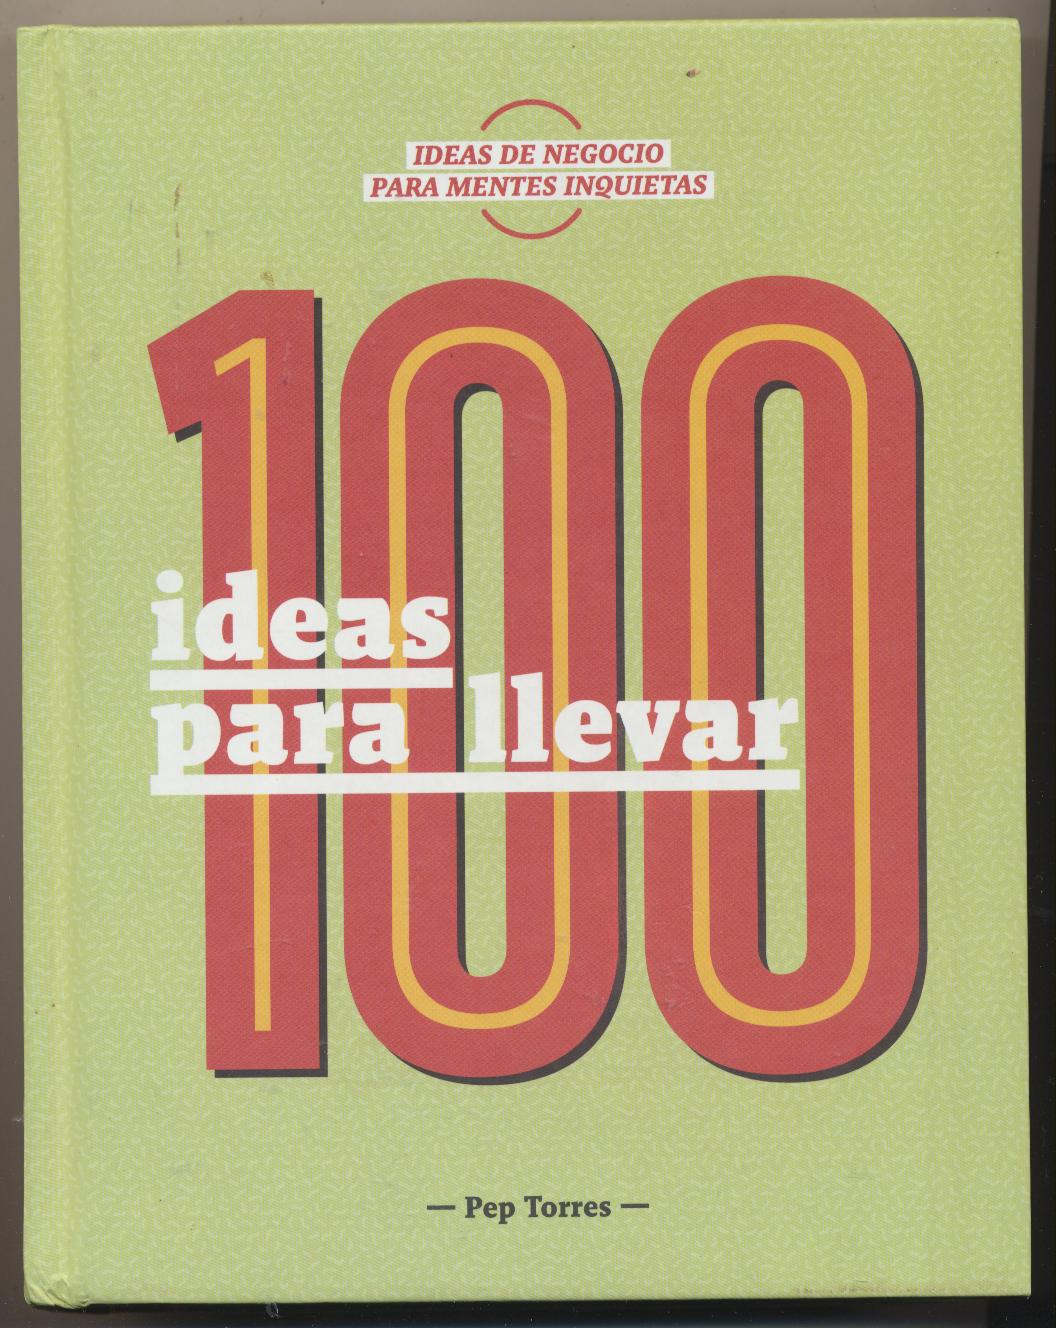 100 ideas para llevar. Pep Torres. 1ª Edición